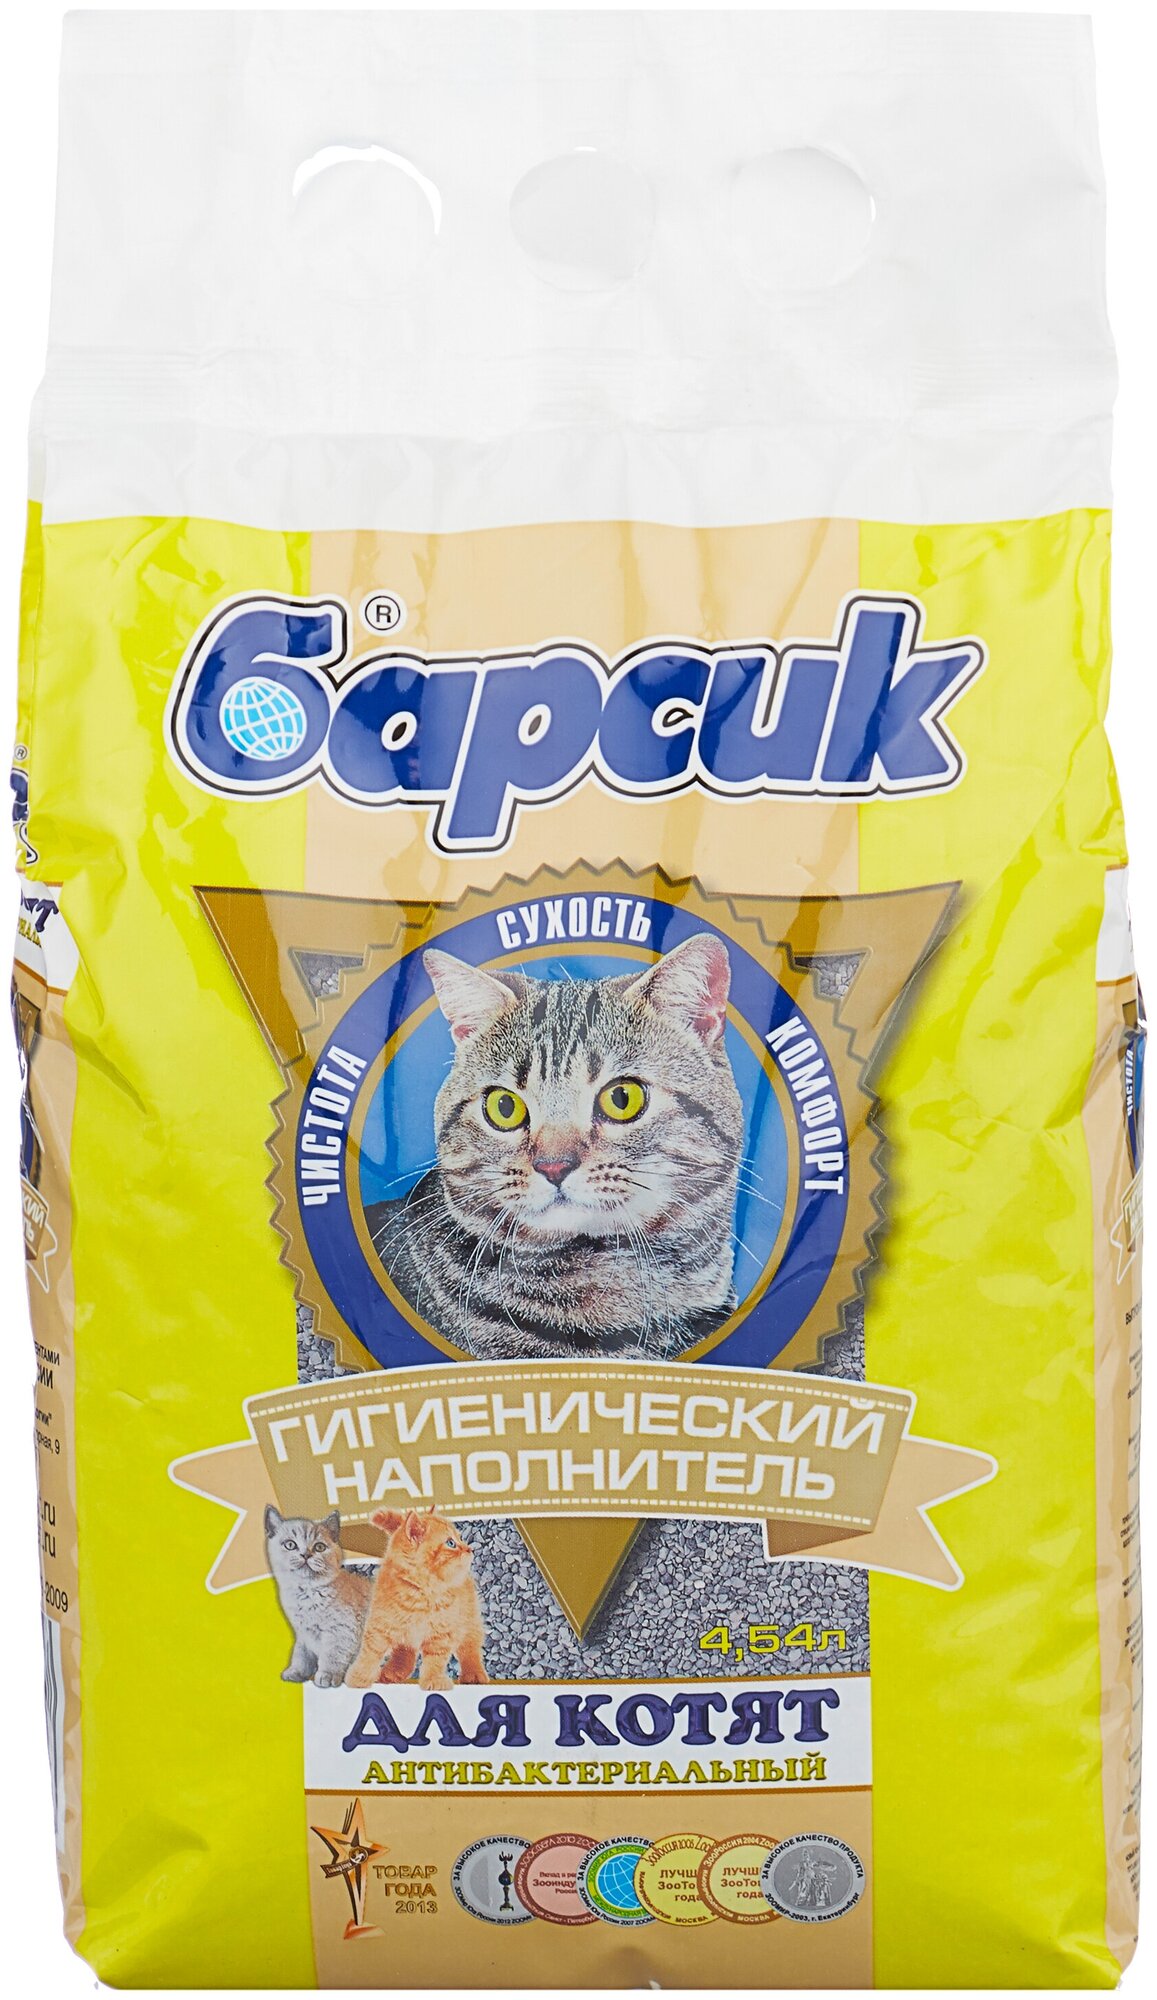 Впитывающий наполнитель Барсик для котят, 4.5л, 1 шт. — купить в  интернет-магазине по низкой цене на Яндекс Маркете